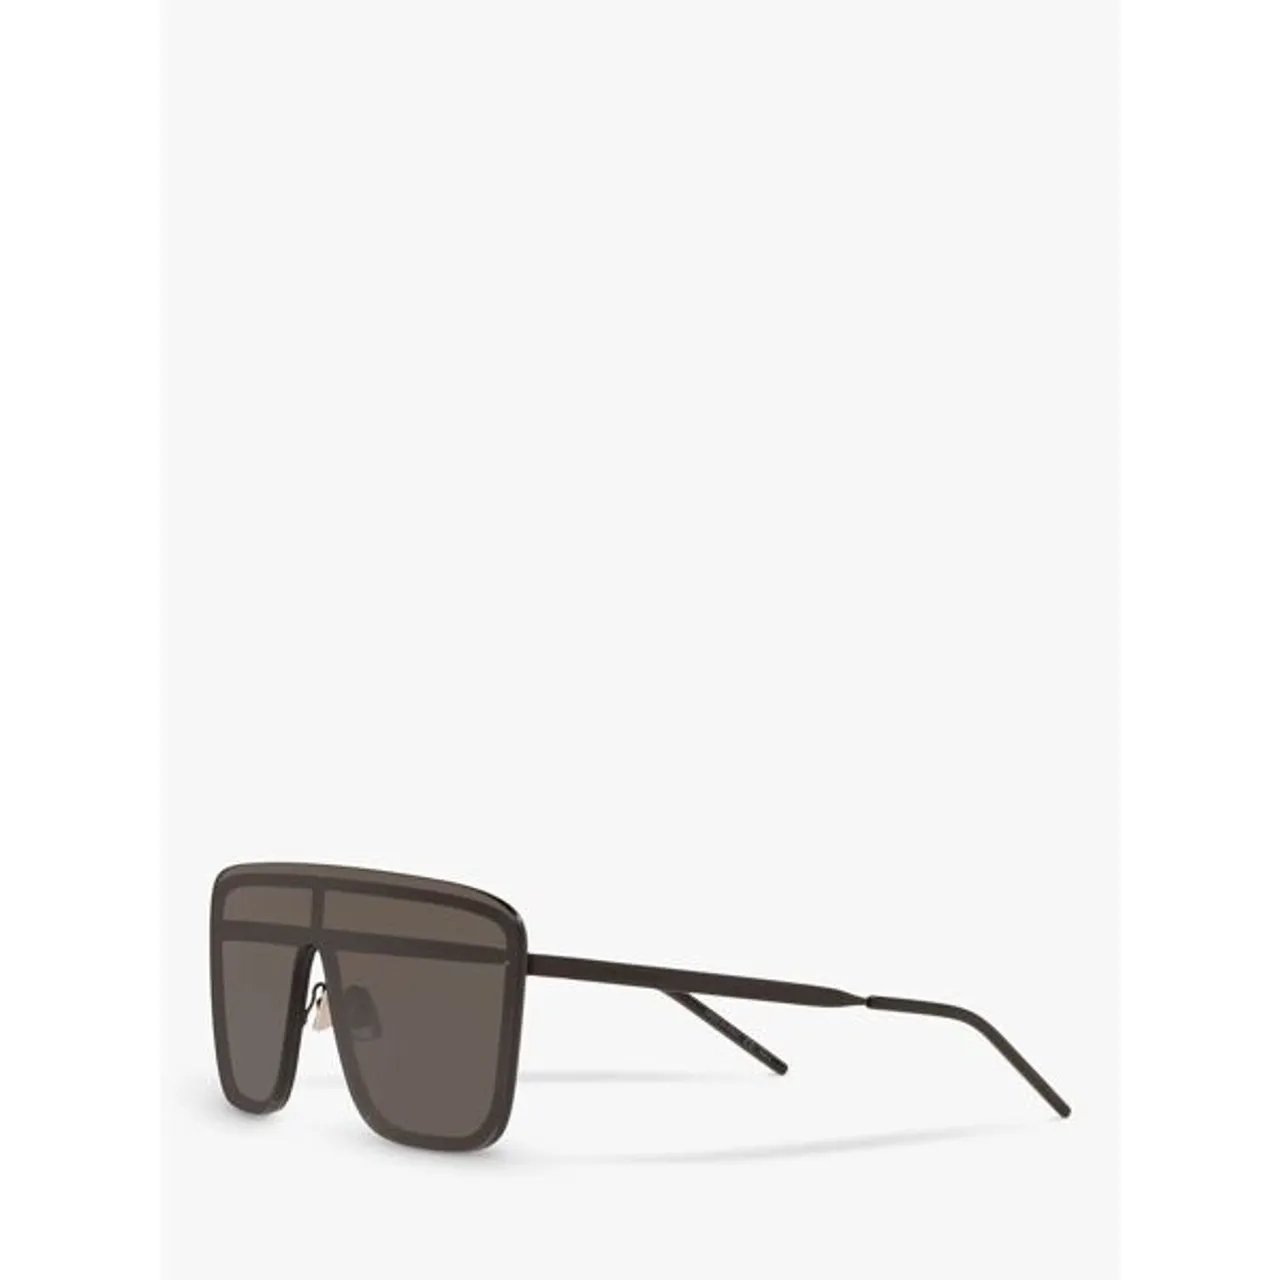 Yves Saint Laurent SL 364 Unisex Rectangular Sunglasses - Matte Black/Black - Female